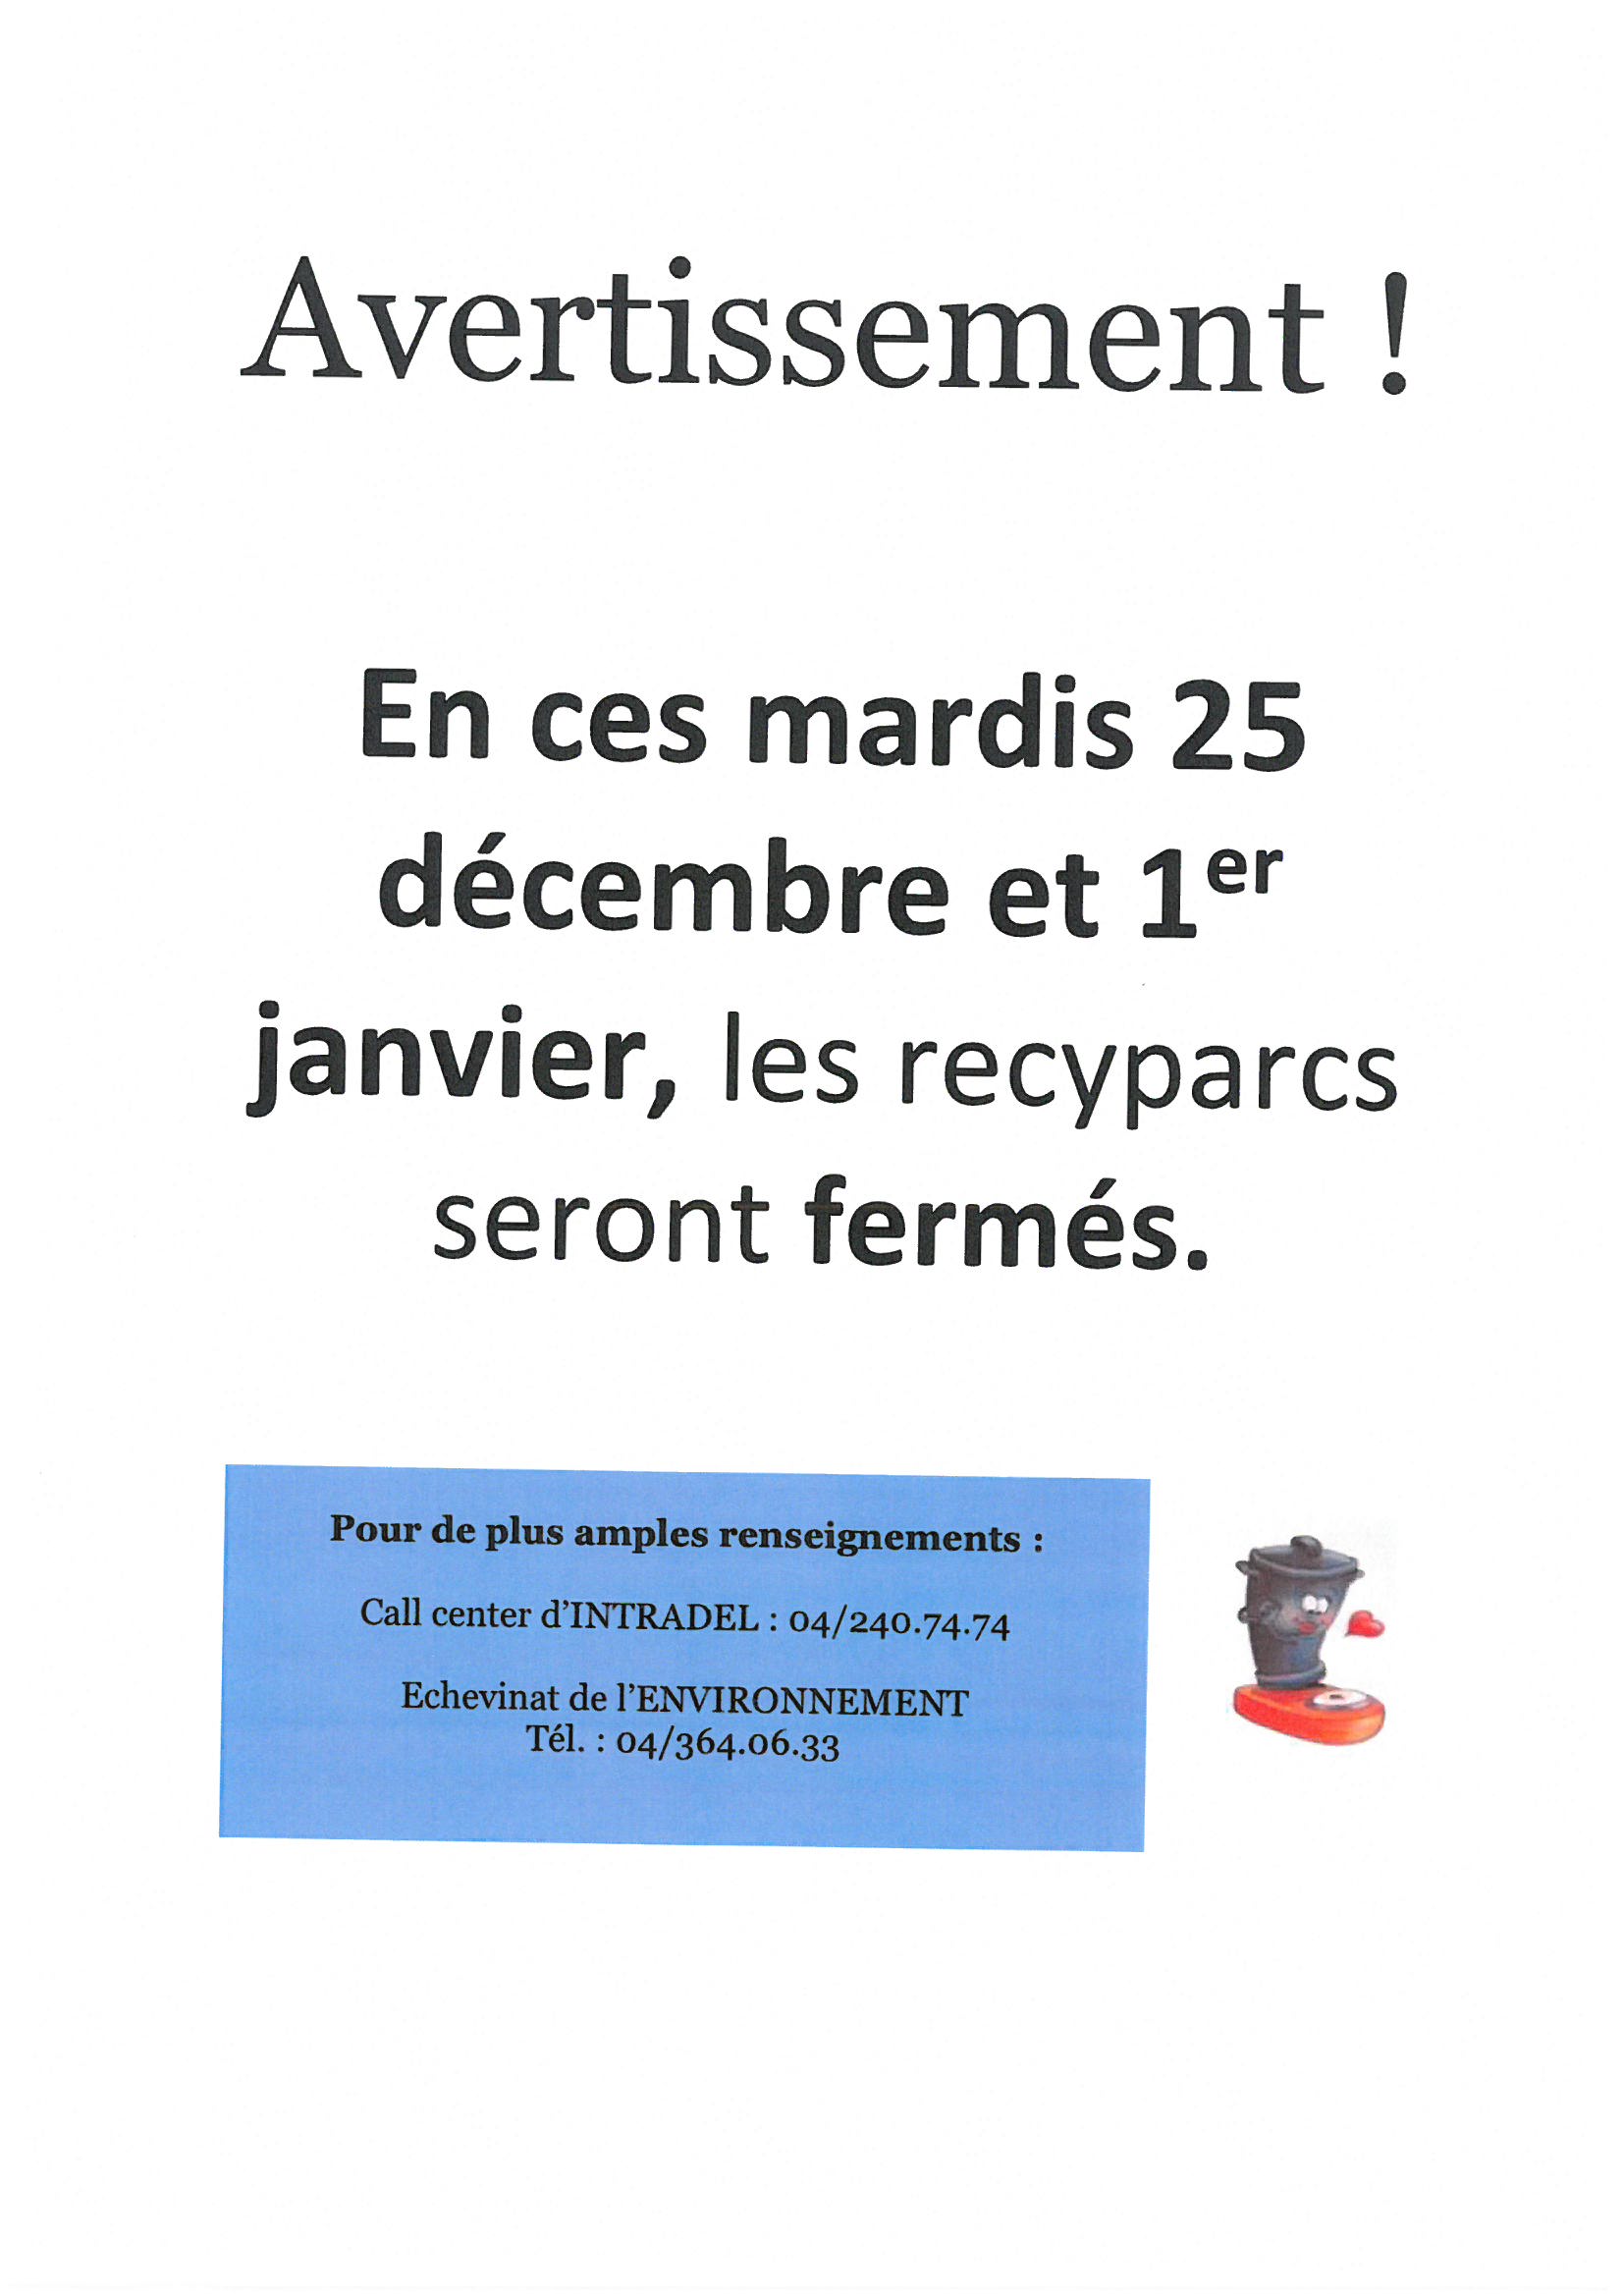 Fermeture des recyparcs les mardis 25 décembre et 1er janvier 